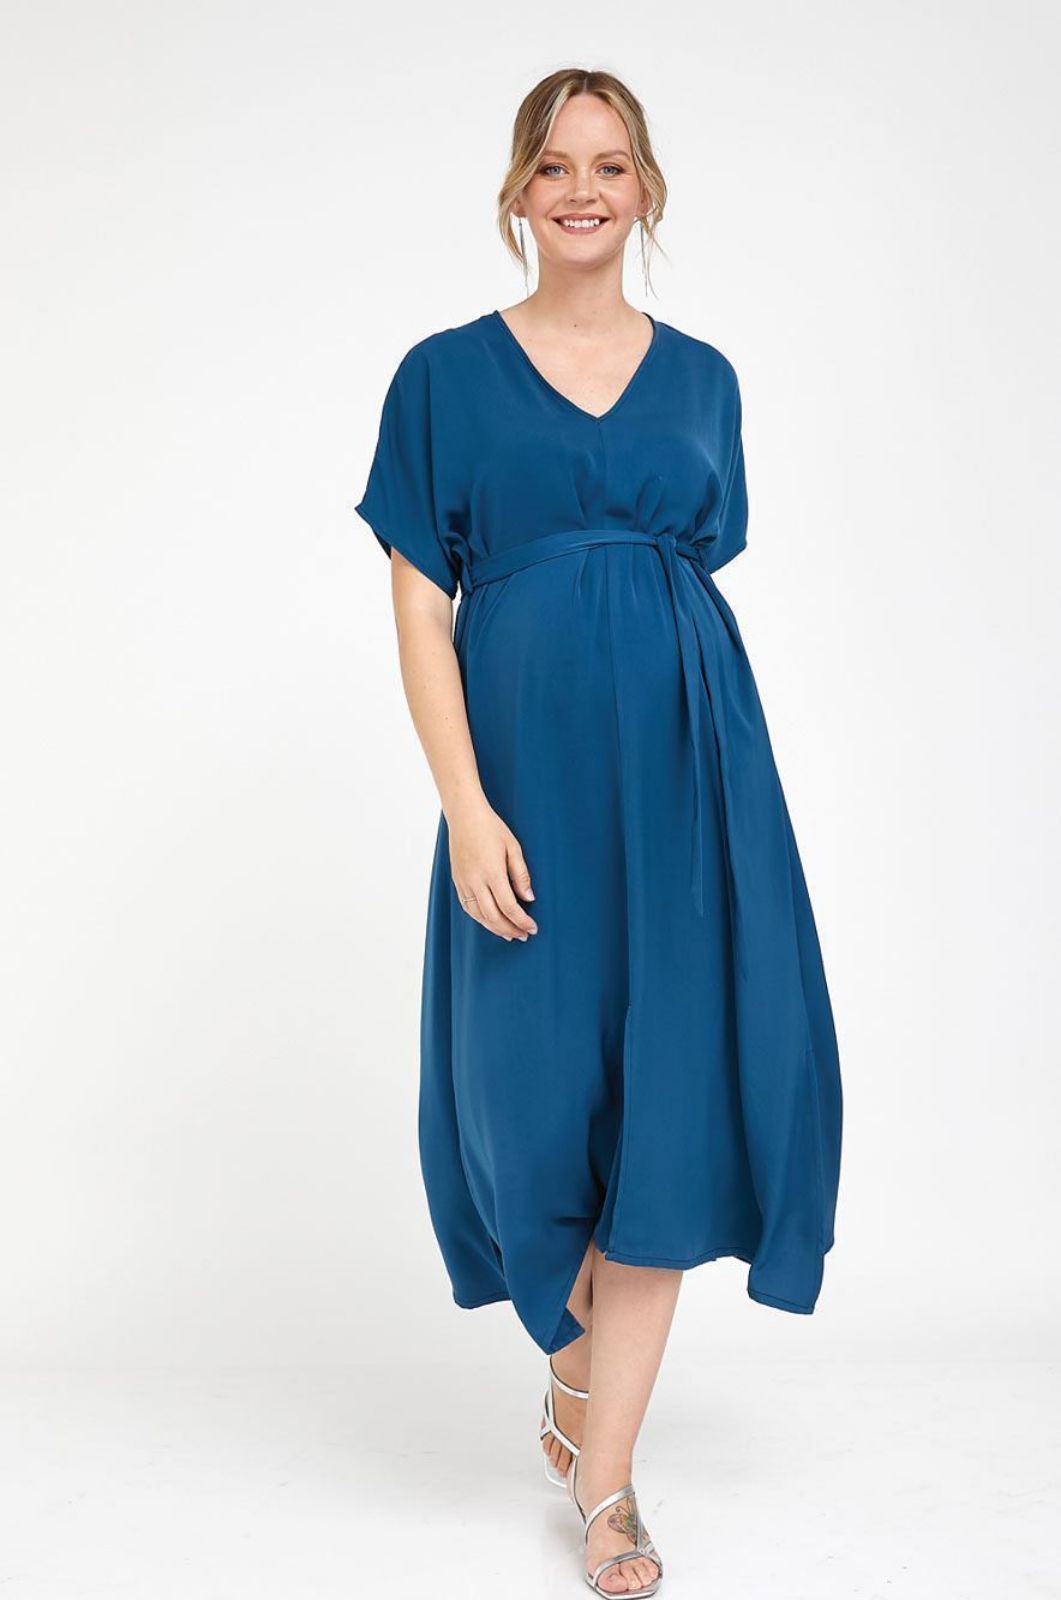 אישה לובשת שמלת הריון אווה כחול אינדיגו